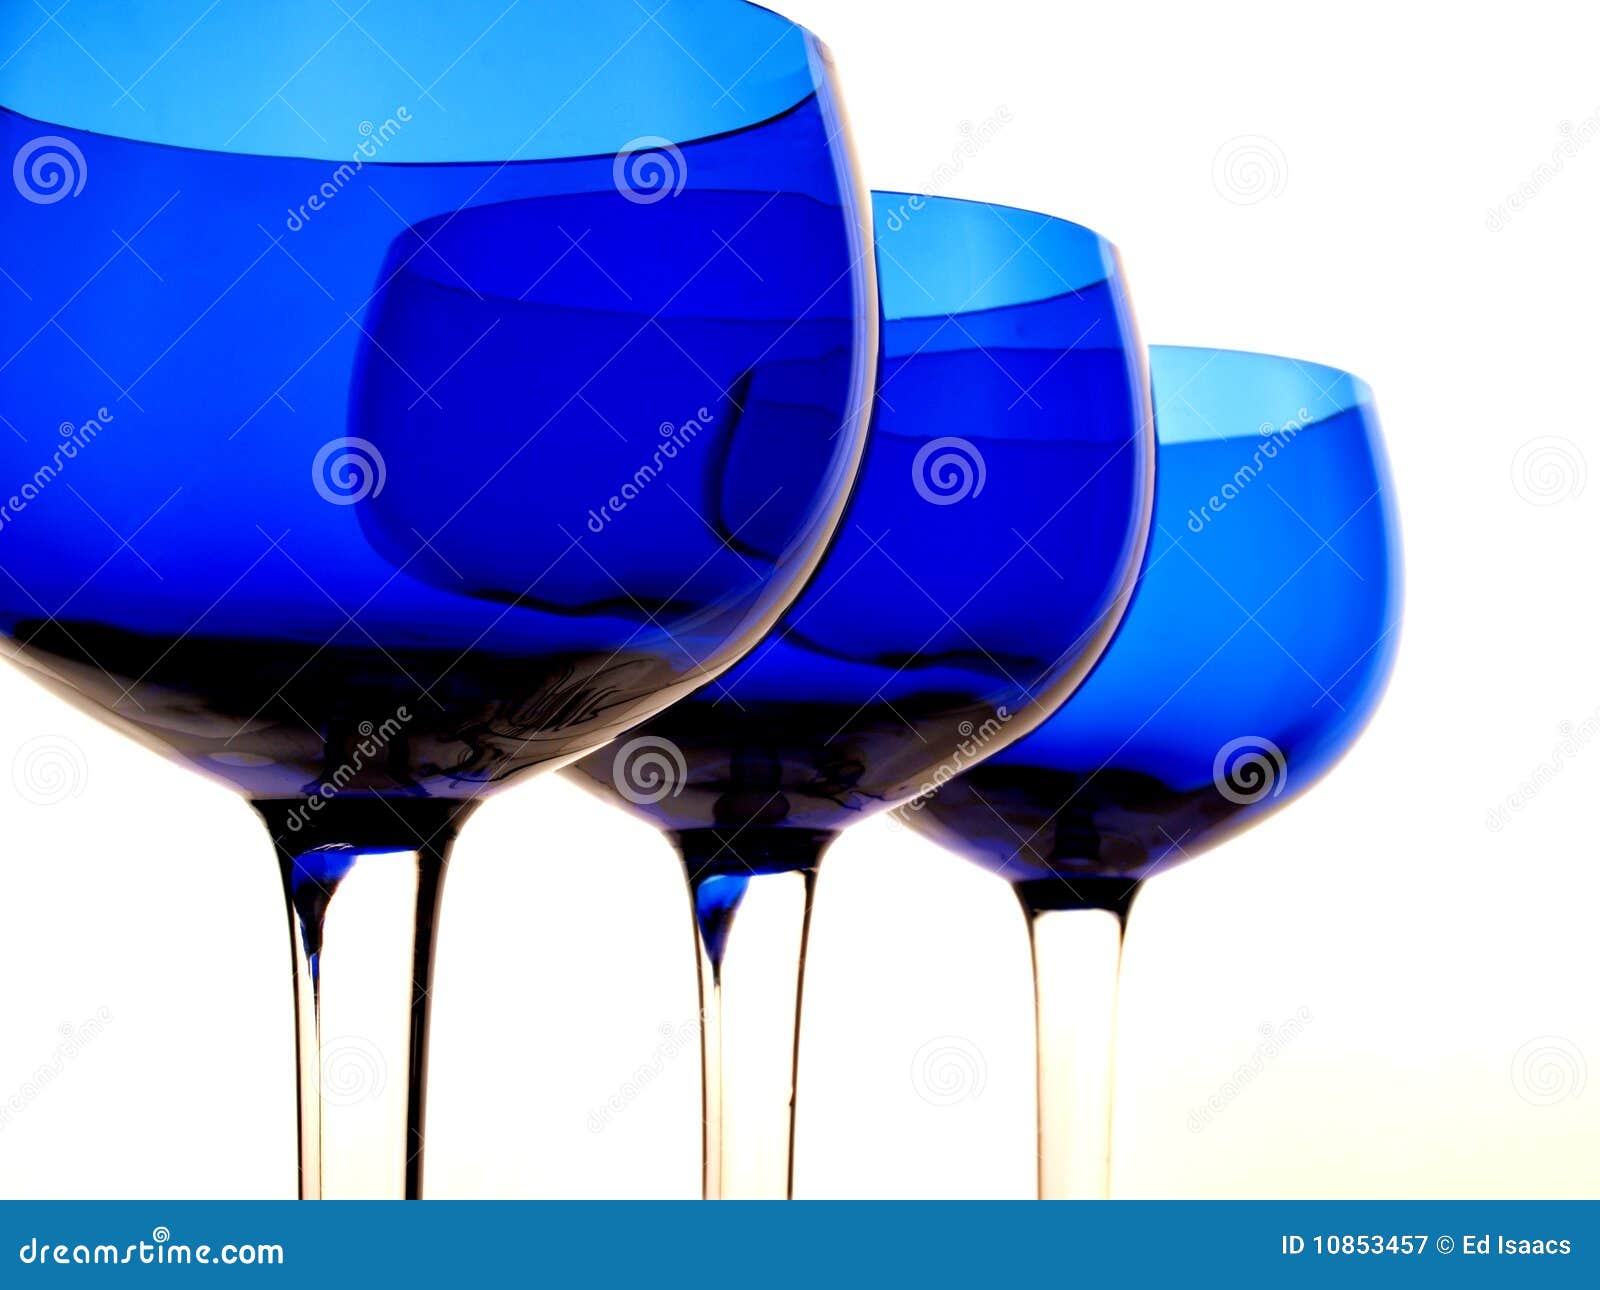 Abstrakte blaue Glas-Auslegung. Abstrakte Glaswarehintergrundauslegung gebildet von den blauen Gläsern.